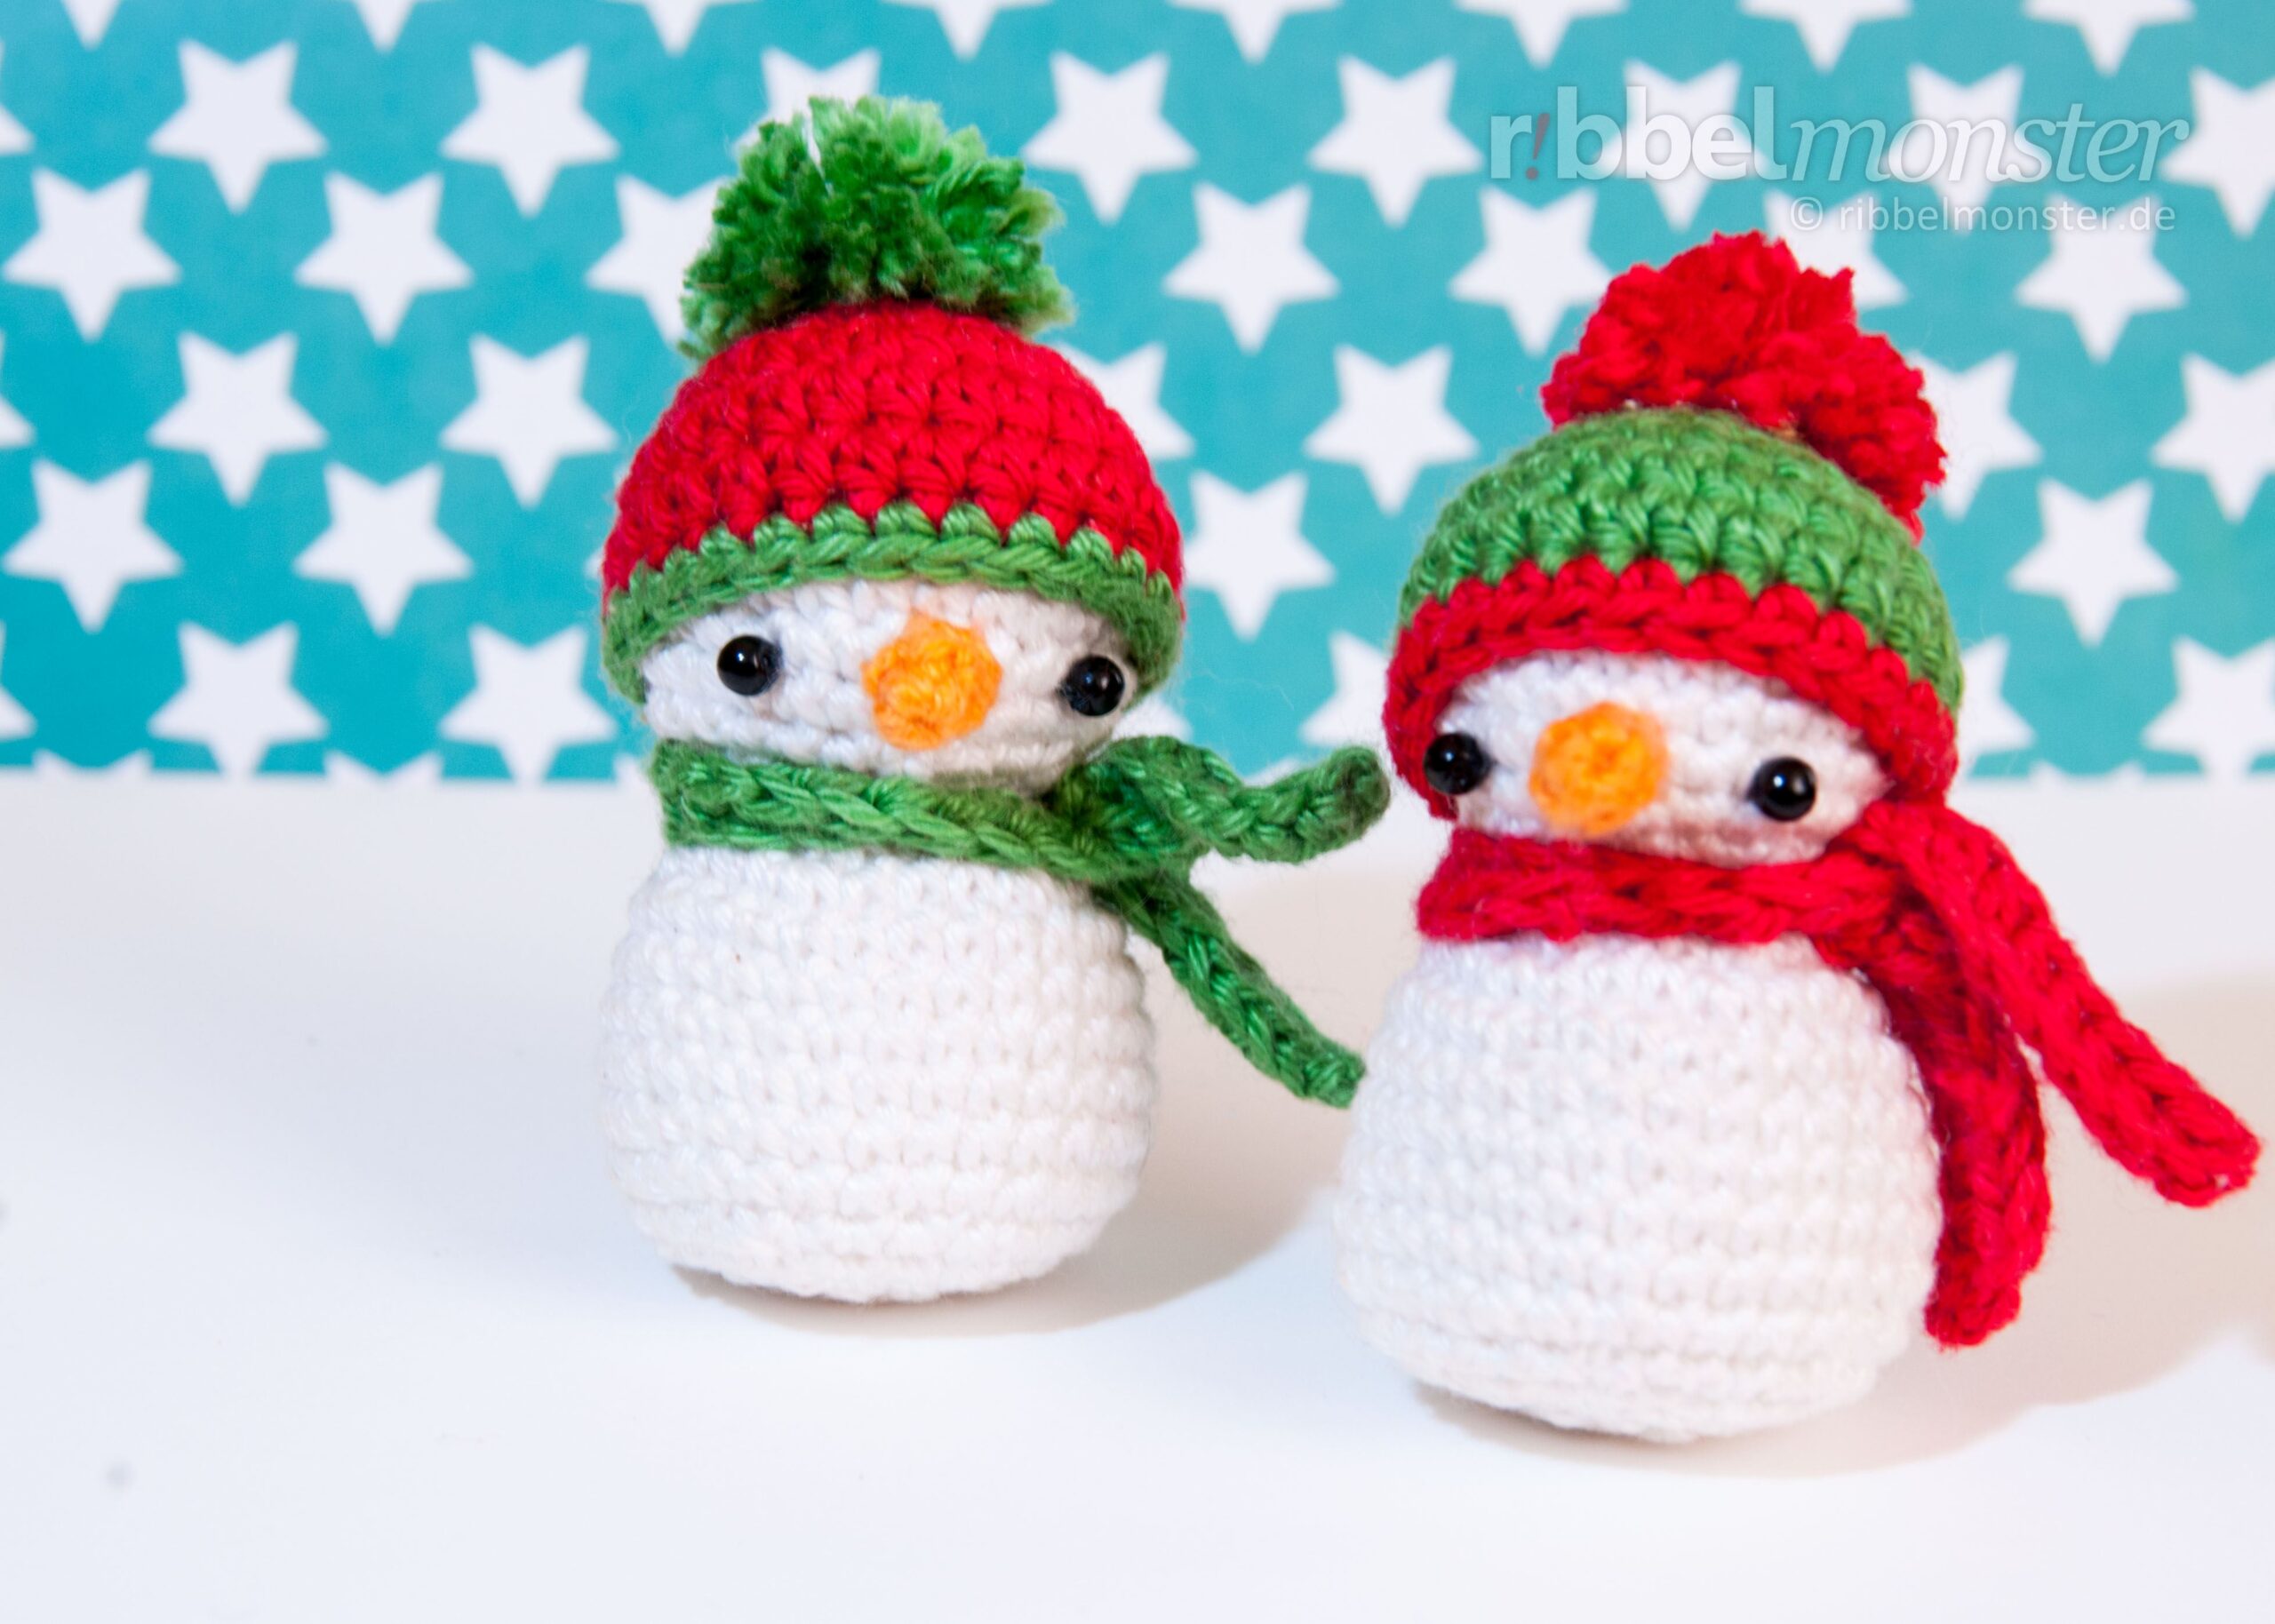 Amigurumi – Crochet Little Snowman